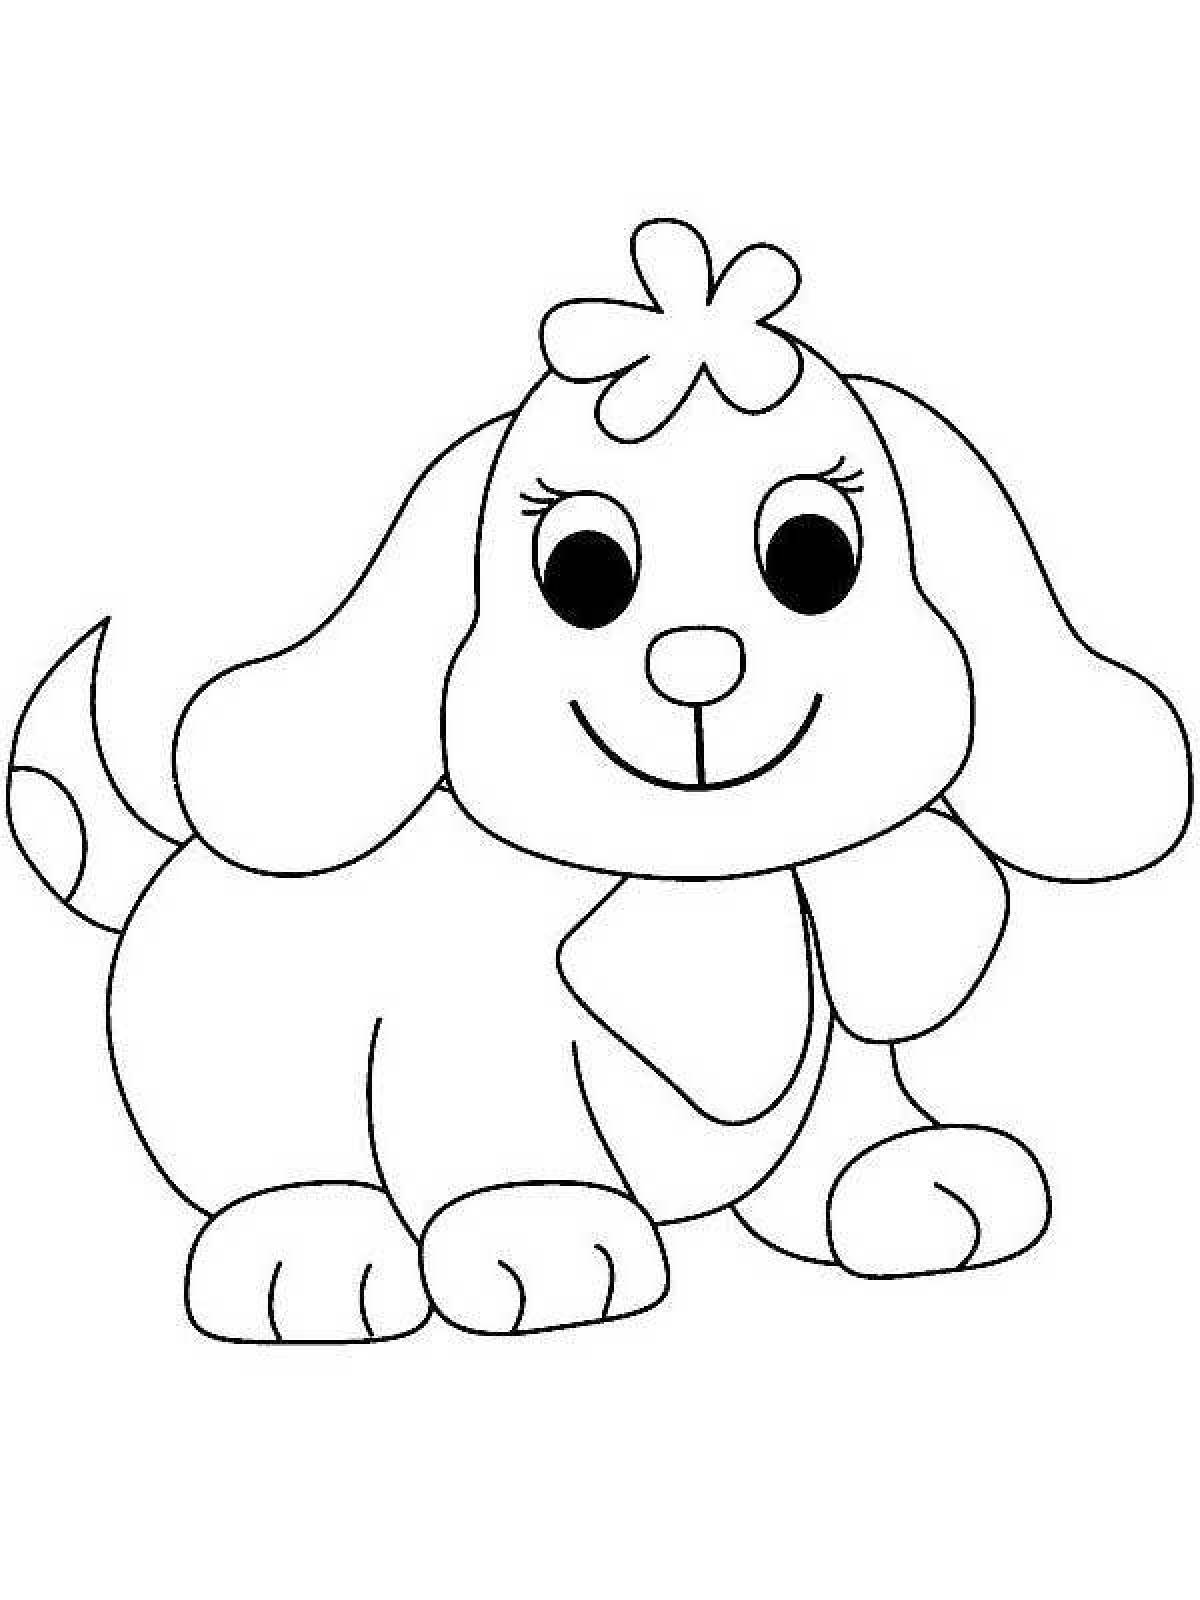 Красочная раскраска собака для детей 3-4 лет